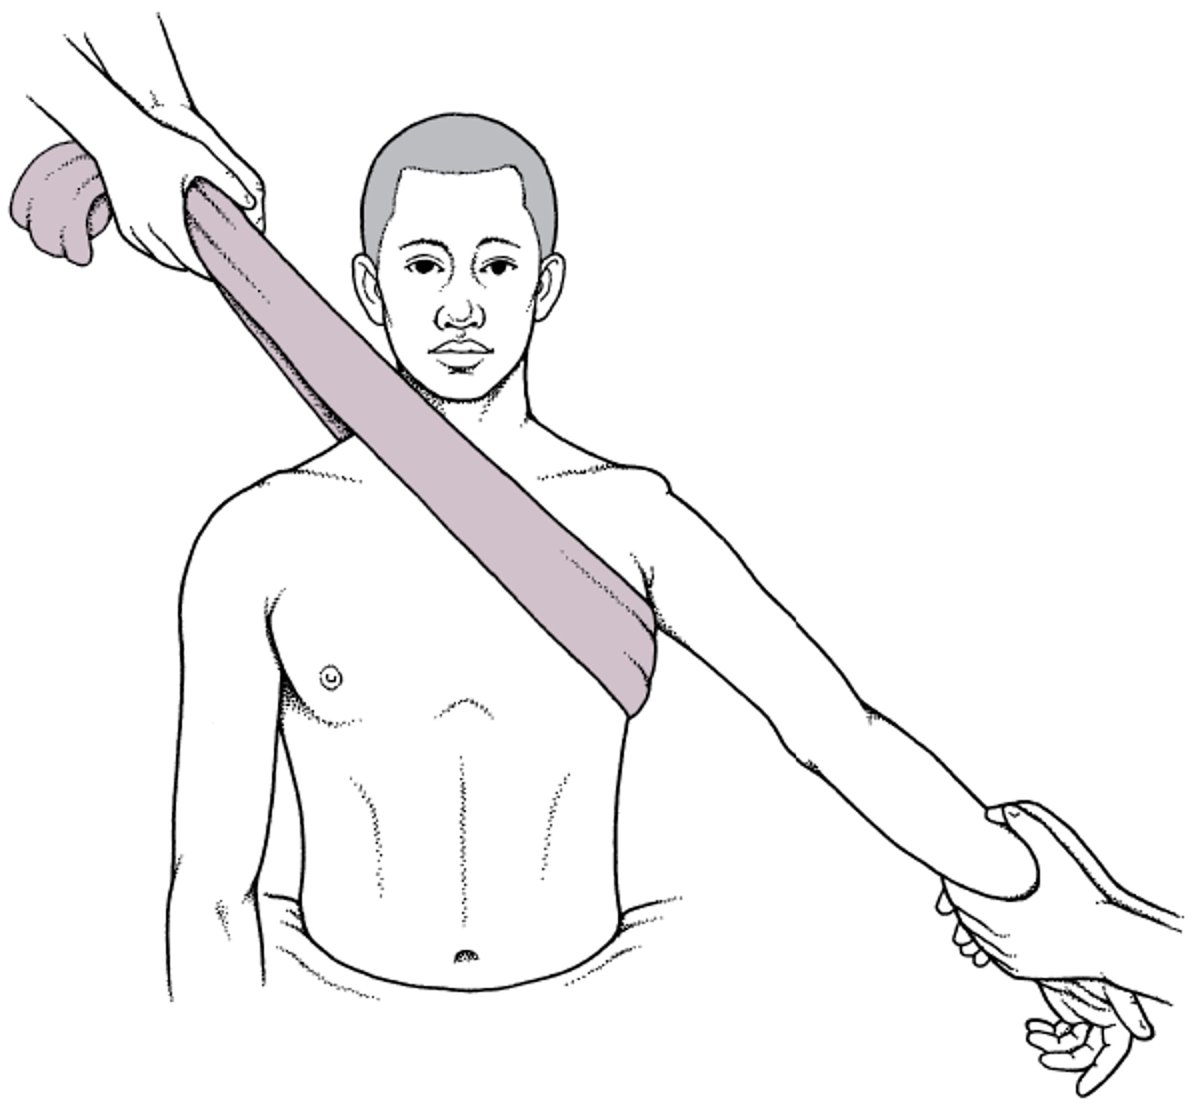 Technique de réduction par traction-contre-traction des luxations antérieures de l'épaule